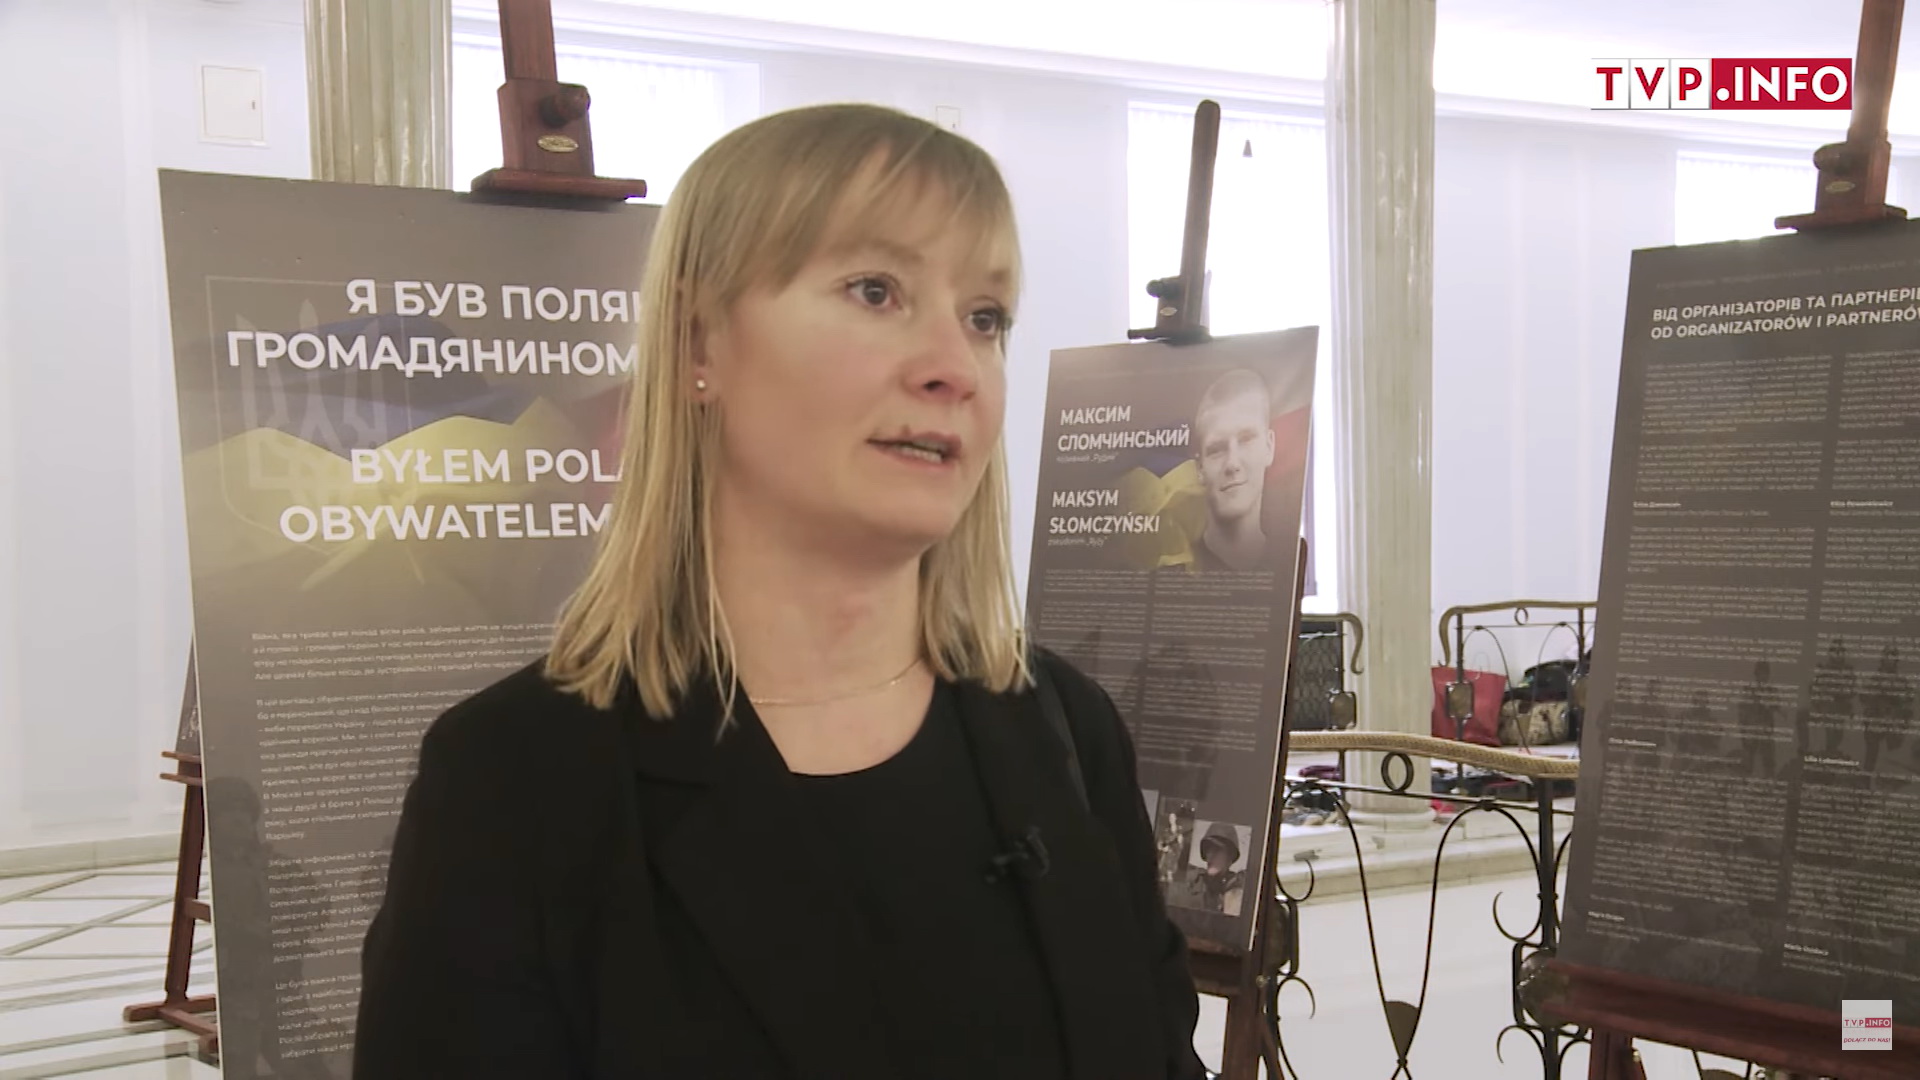 Wystawa w Sejmie RP o zaginionych Polakach – obywatelach Ukrainy